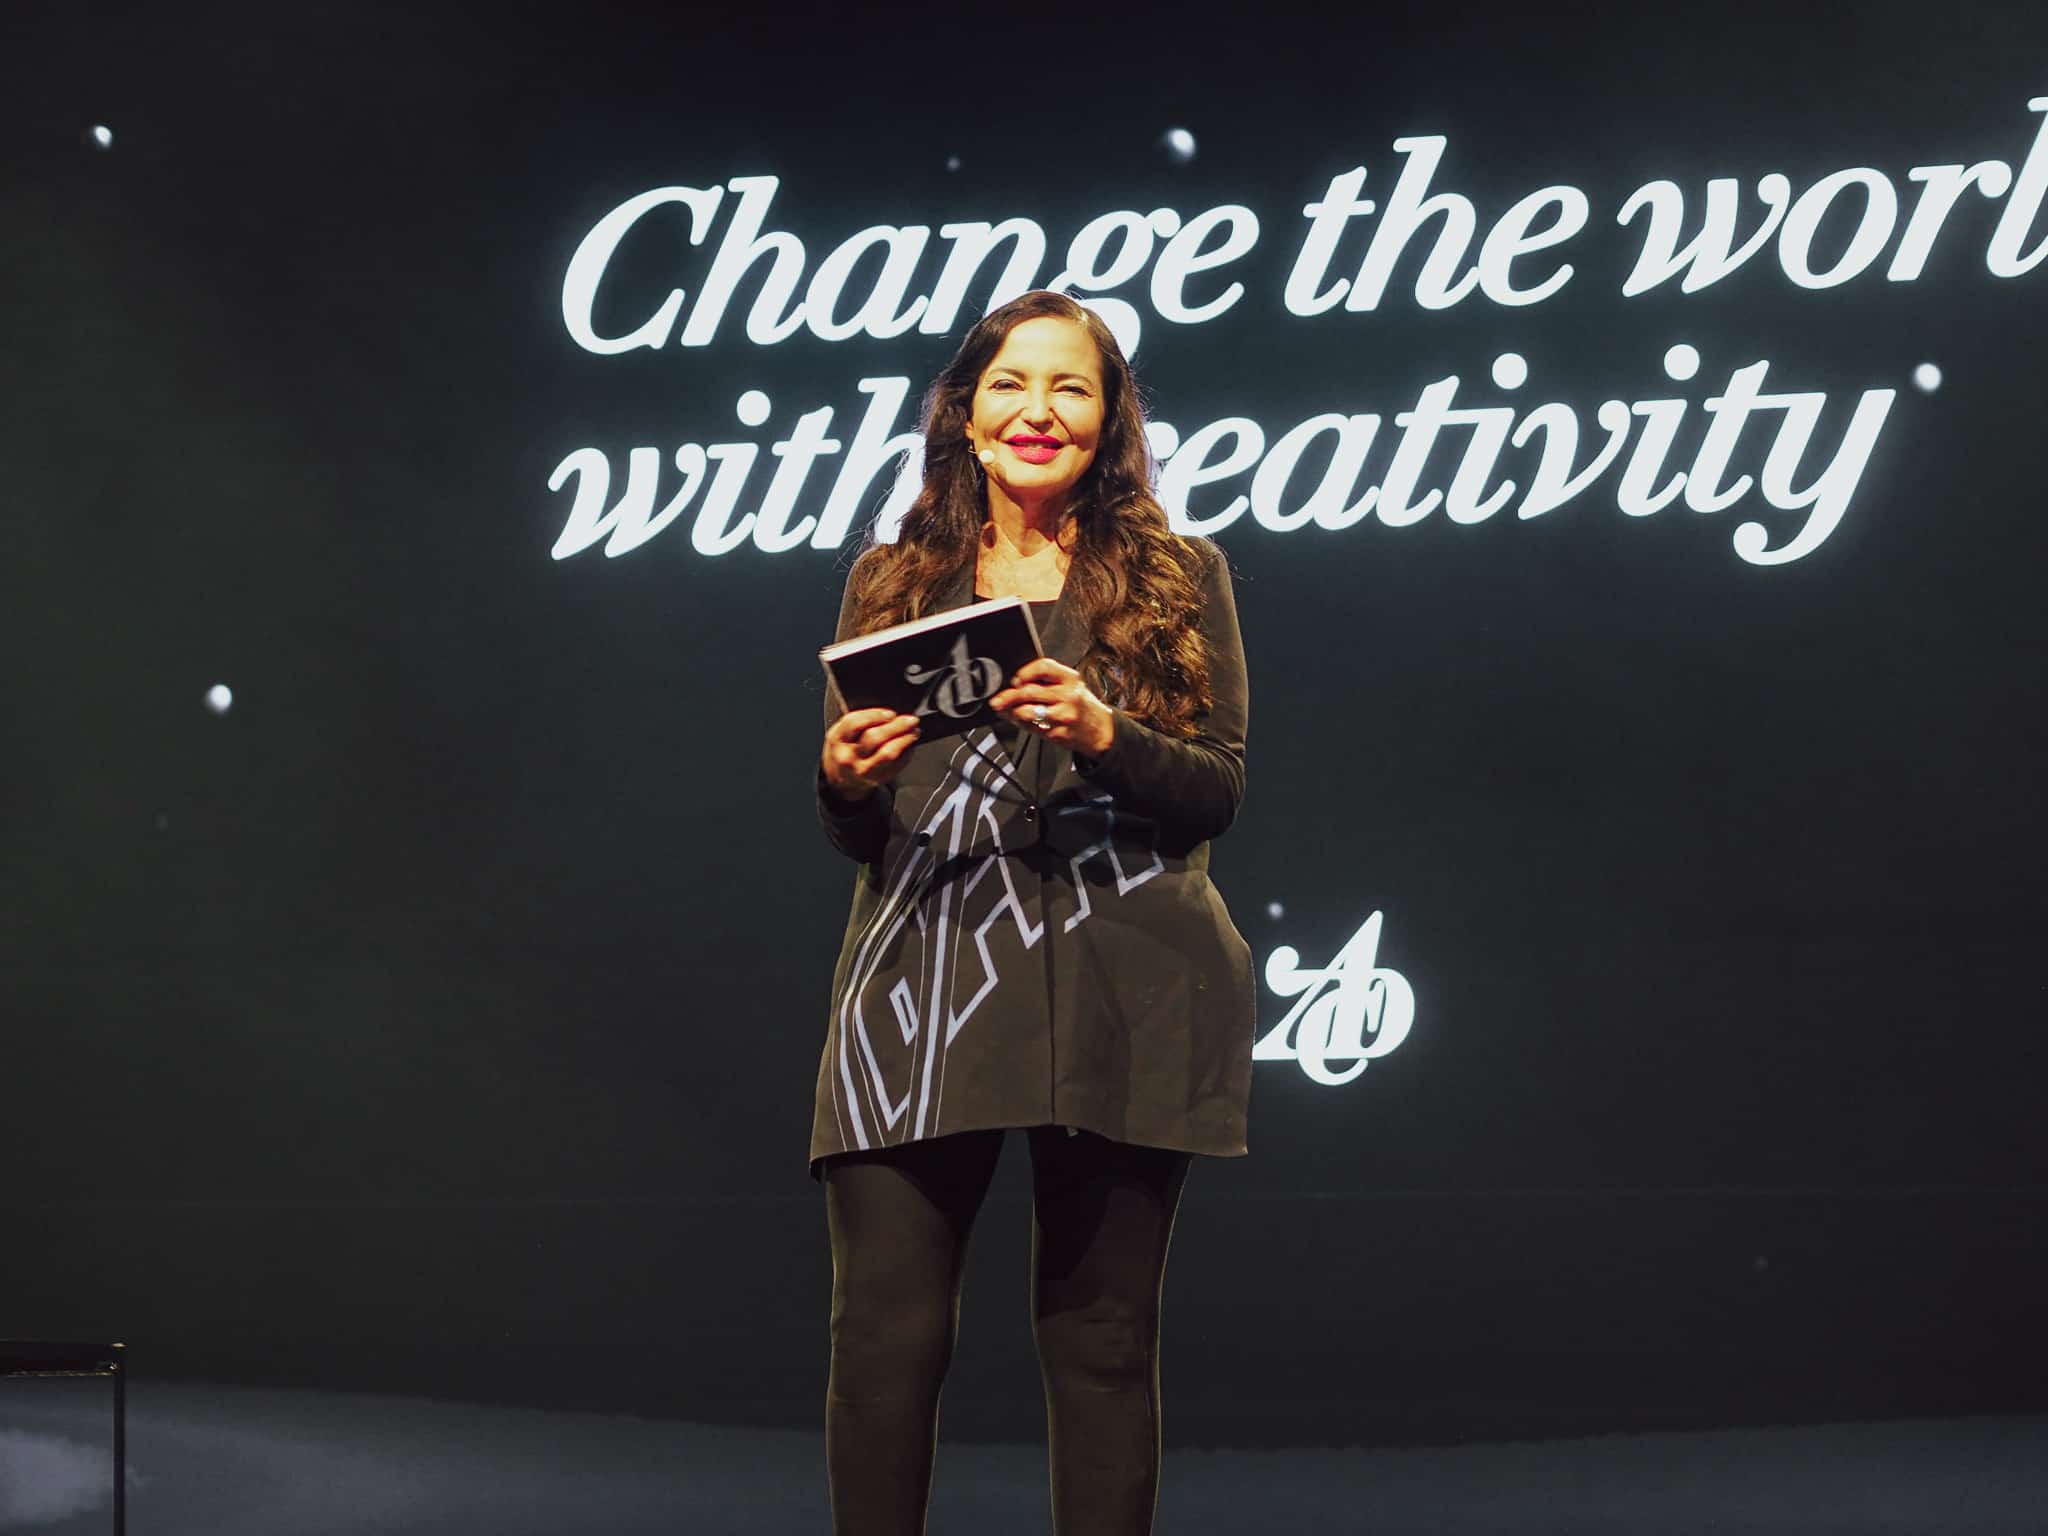 Eine Frau in schwarzer Kleidung steht auf einer Bühne und hält ein Mikrofon. Im Hintergrund befindet sich ein großer Bildschirm mit der Aufschrift "Change the world with creativity".